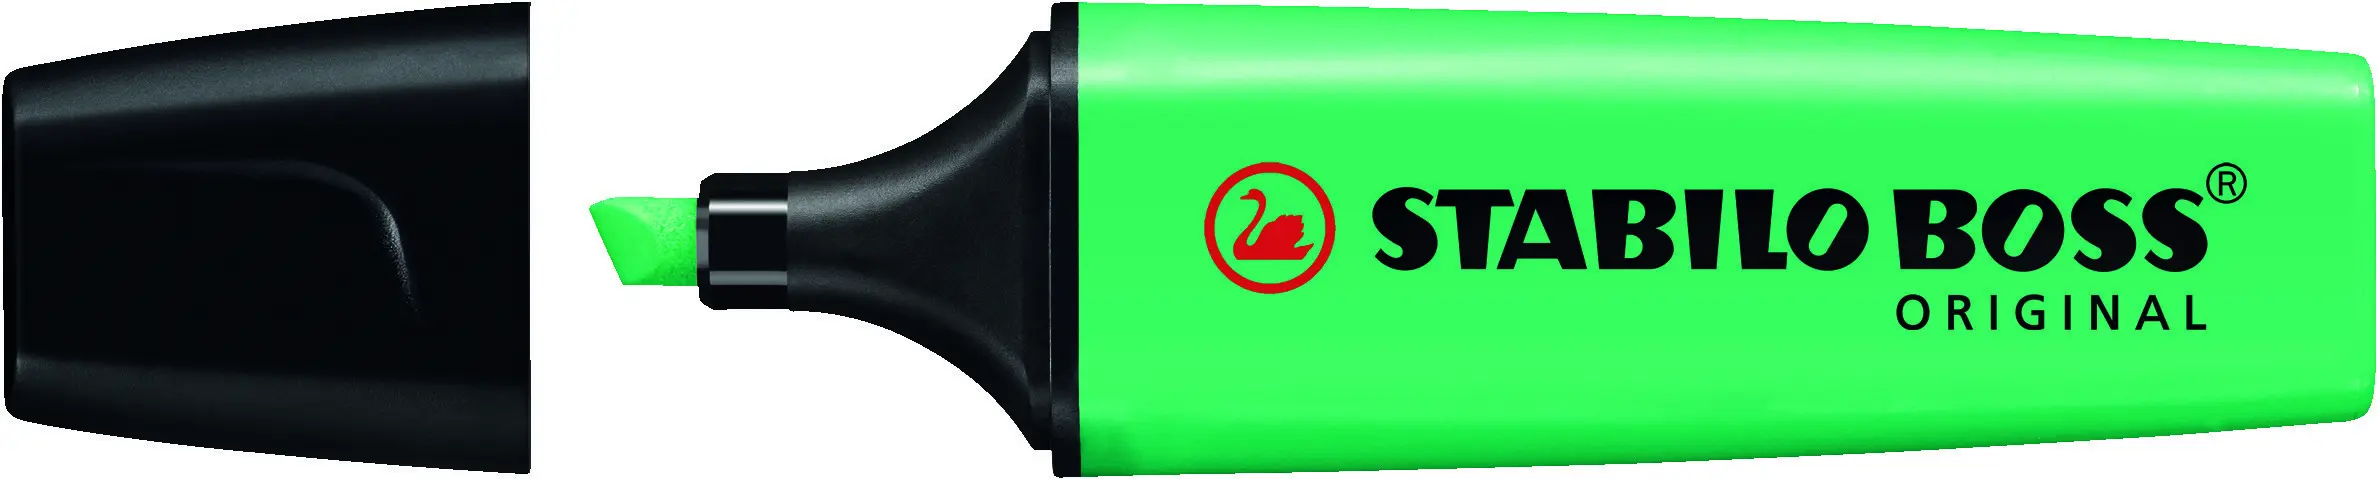 Stabilo Boss 70 Rotulador Marcador Fluorescente - Trazo entre 2 y 5mm - Recargable - Tinta con Base 